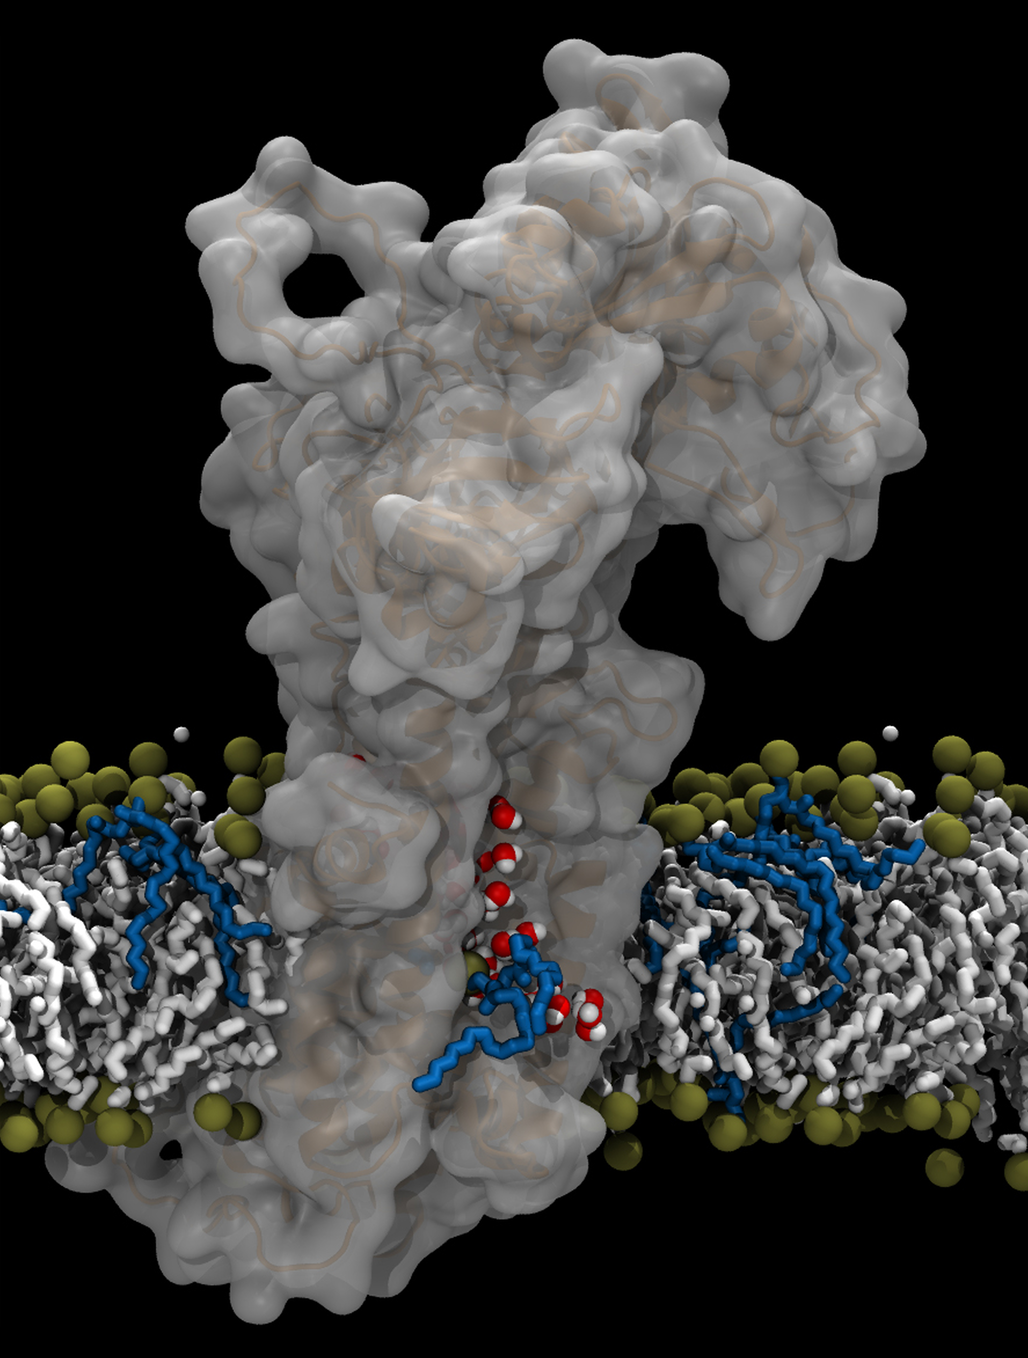 Aarhus-forskernes model for ATP8A2-flippasens transportmekanisme. Flippasemolekylet er det store grå, og man ser fedtmolekylet med blå ”hale” bevæge sig langs en åben kanal i proteinet, hvor der også findes vandmolekyler (røde kugler med hvide pletter).